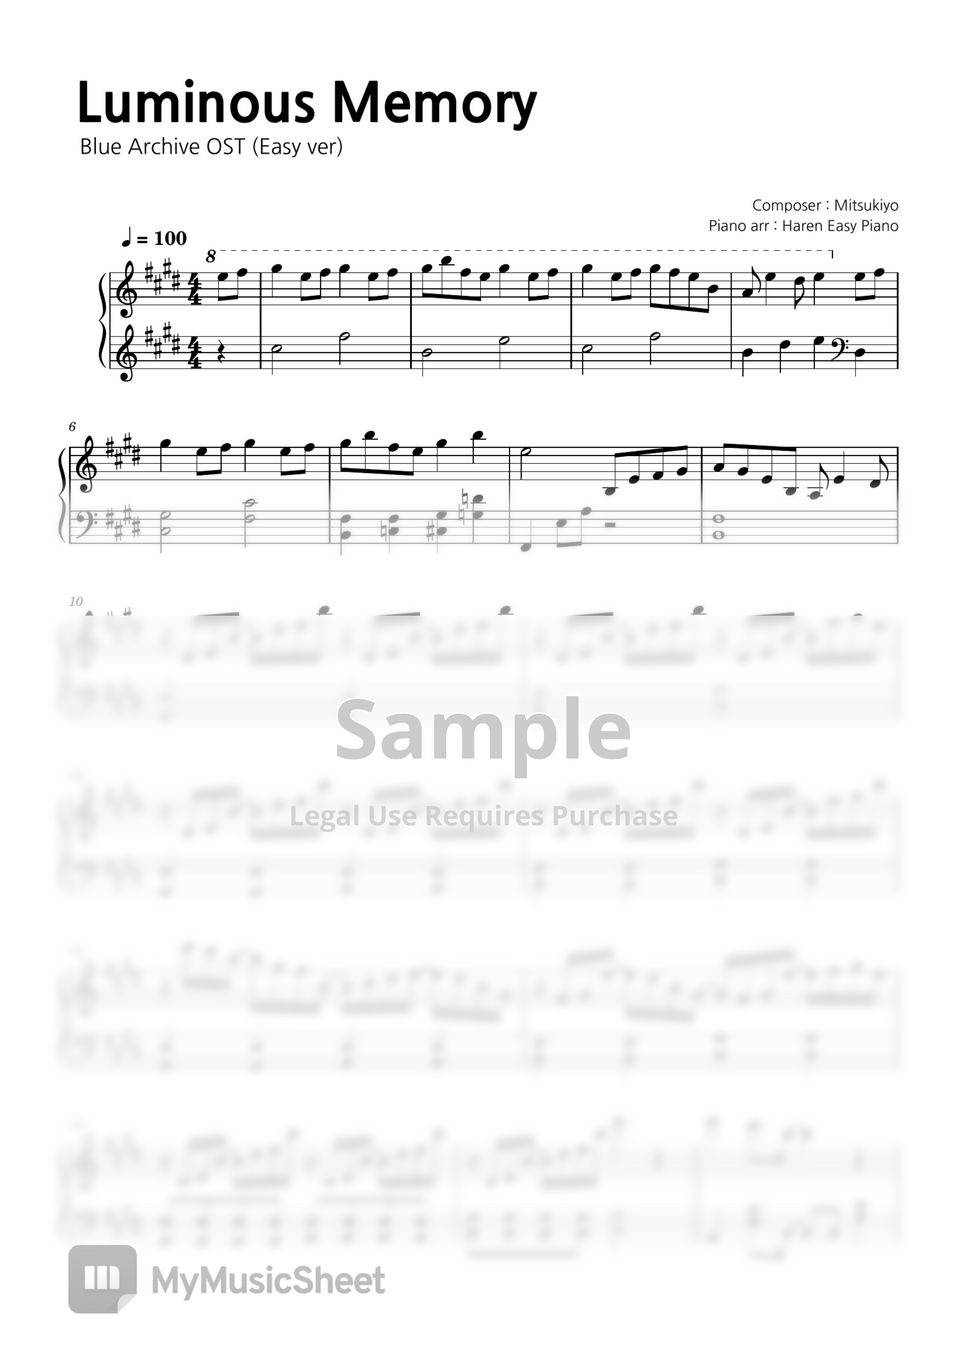 블루 아카이브 OST - 루미너스 메모리 (쉬운 버전) by Haren Easy Piano